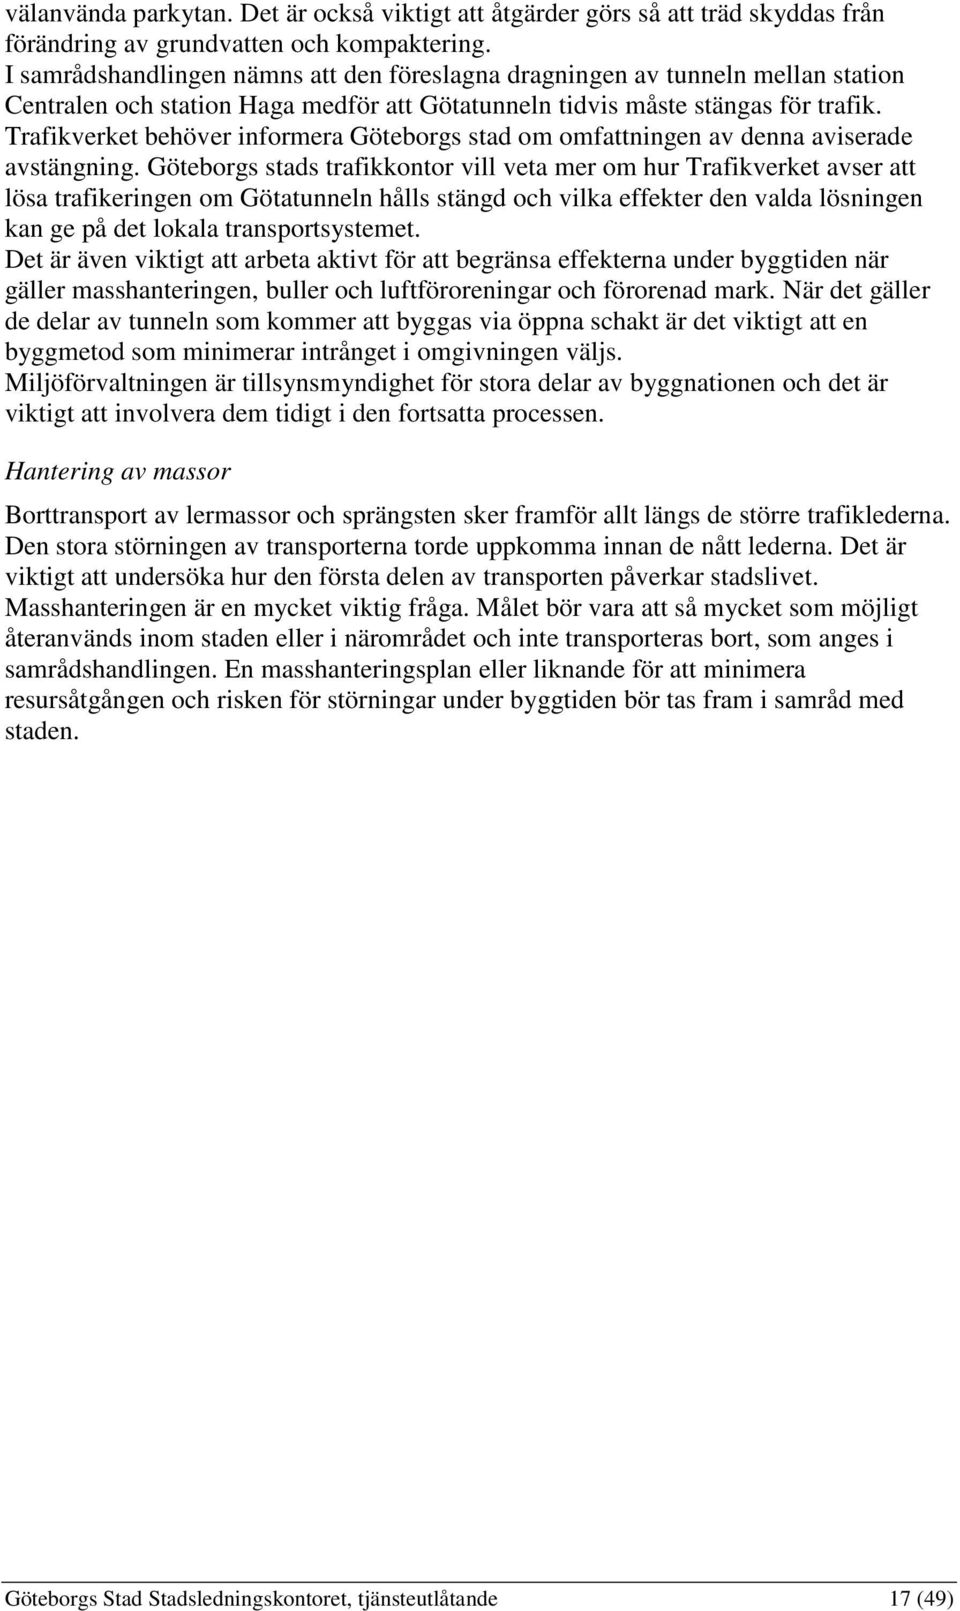 Trafikverket behöver informera Göteborgs stad om omfattningen av denna aviserade avstängning.